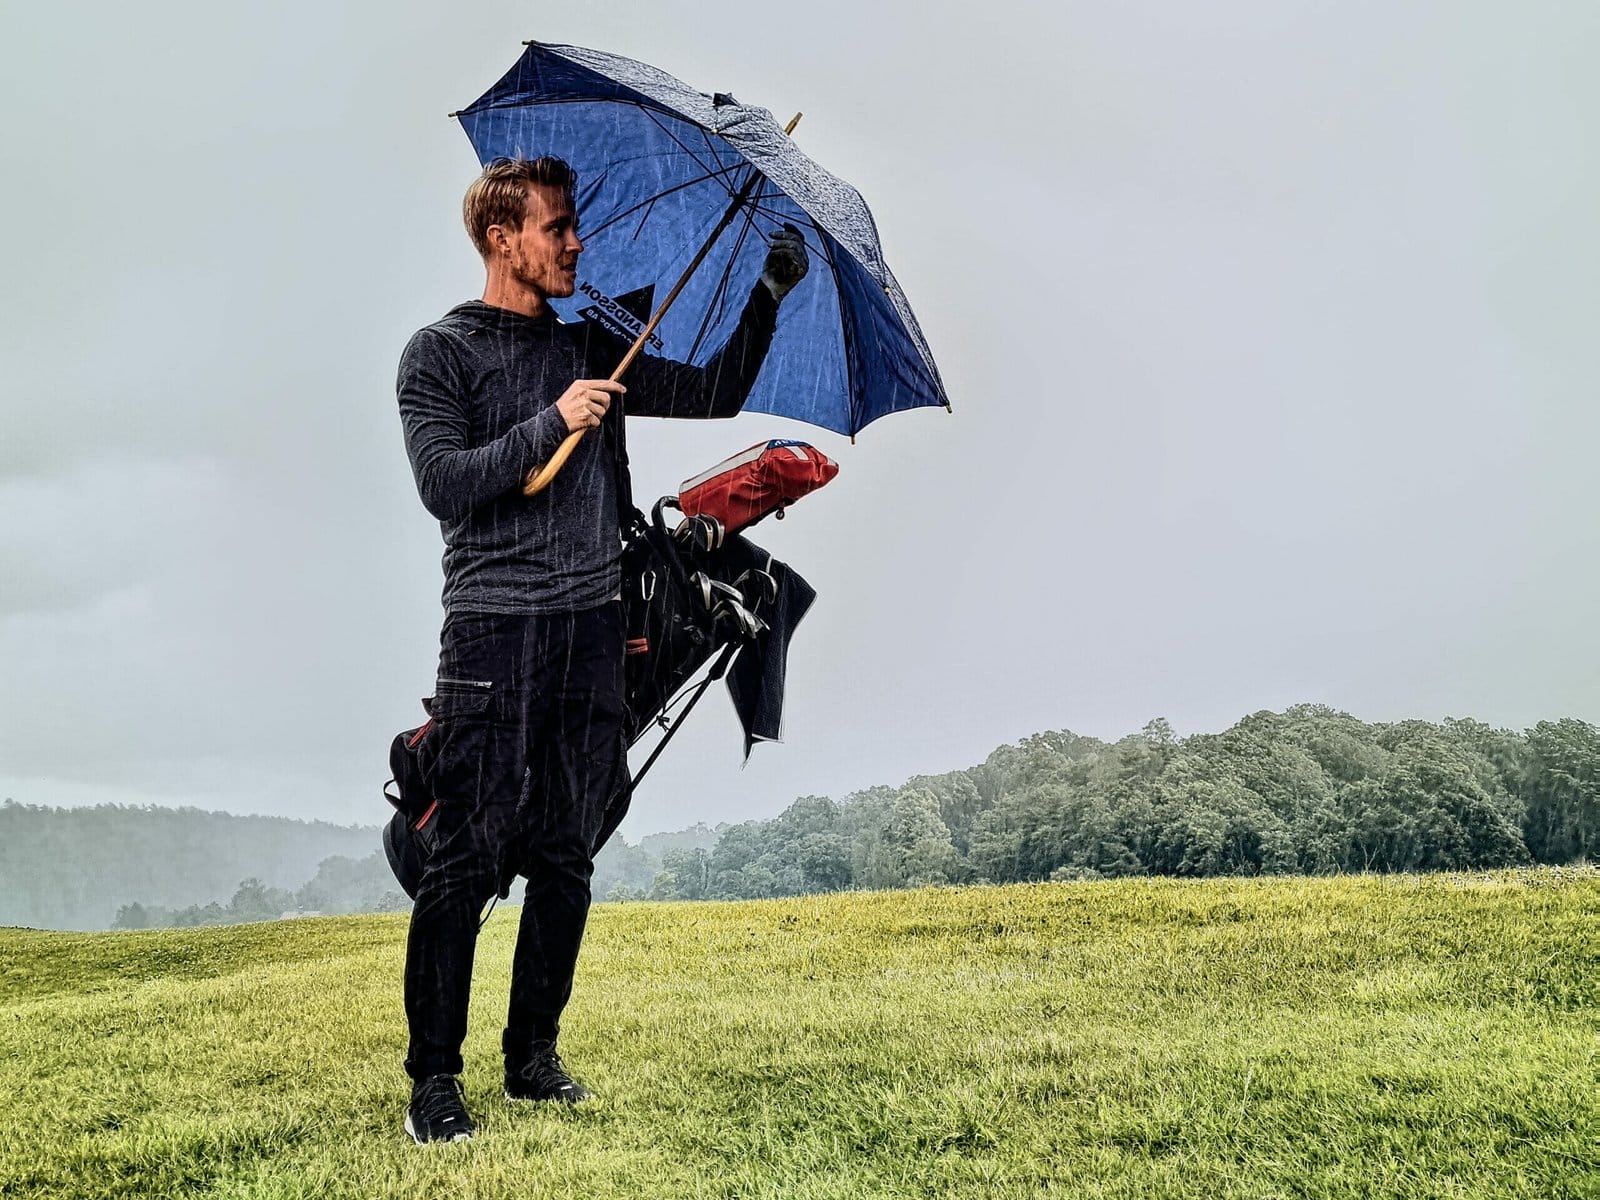 Golf umbrellas